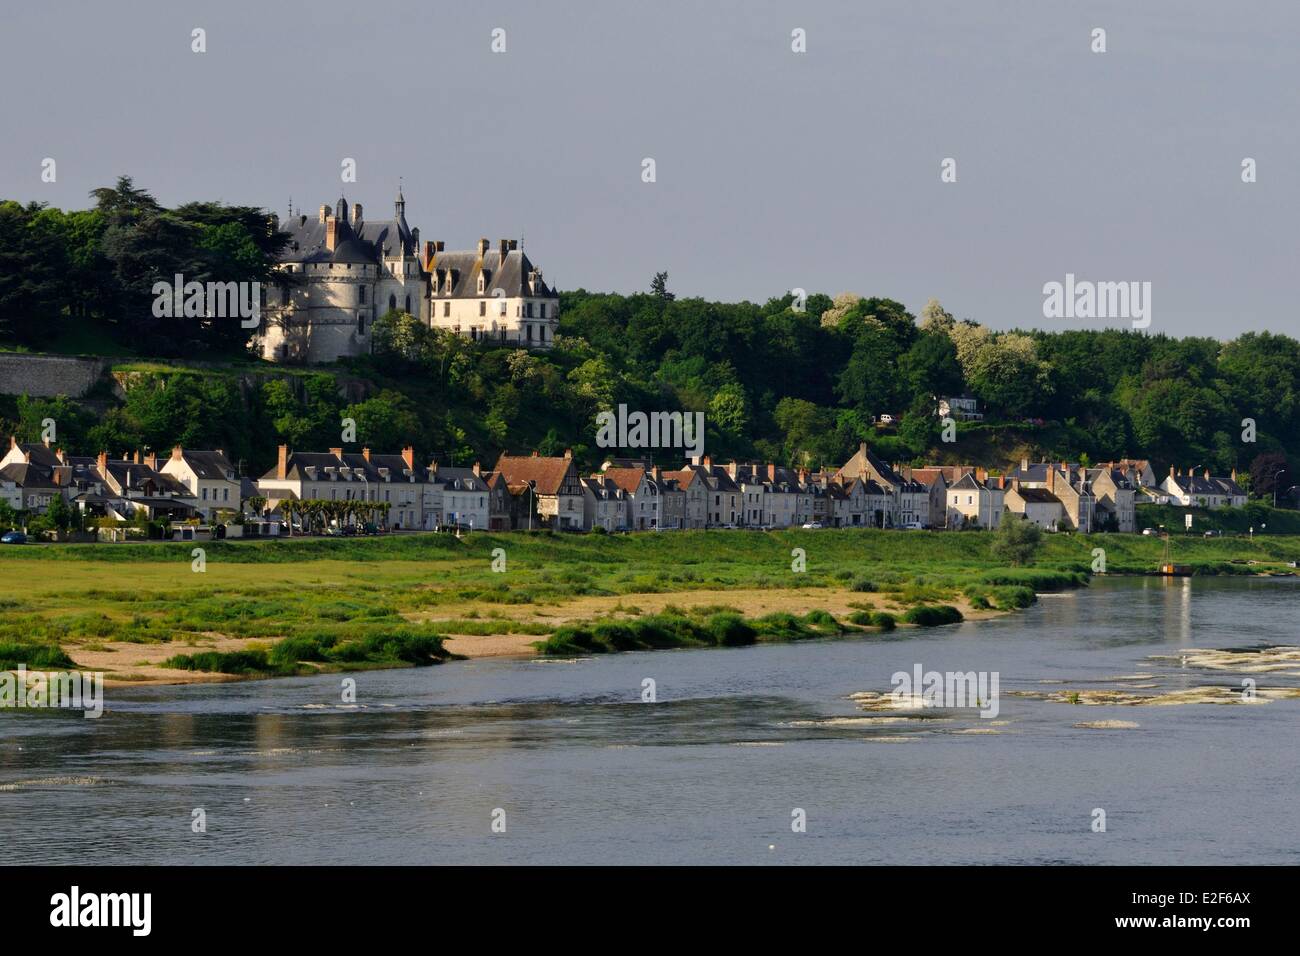 France Loir et Cher Chaumont sur Loire Chateau de Chaumont sur Loire along the Loire river listed as World Heritage by UNESCO Stock Photo